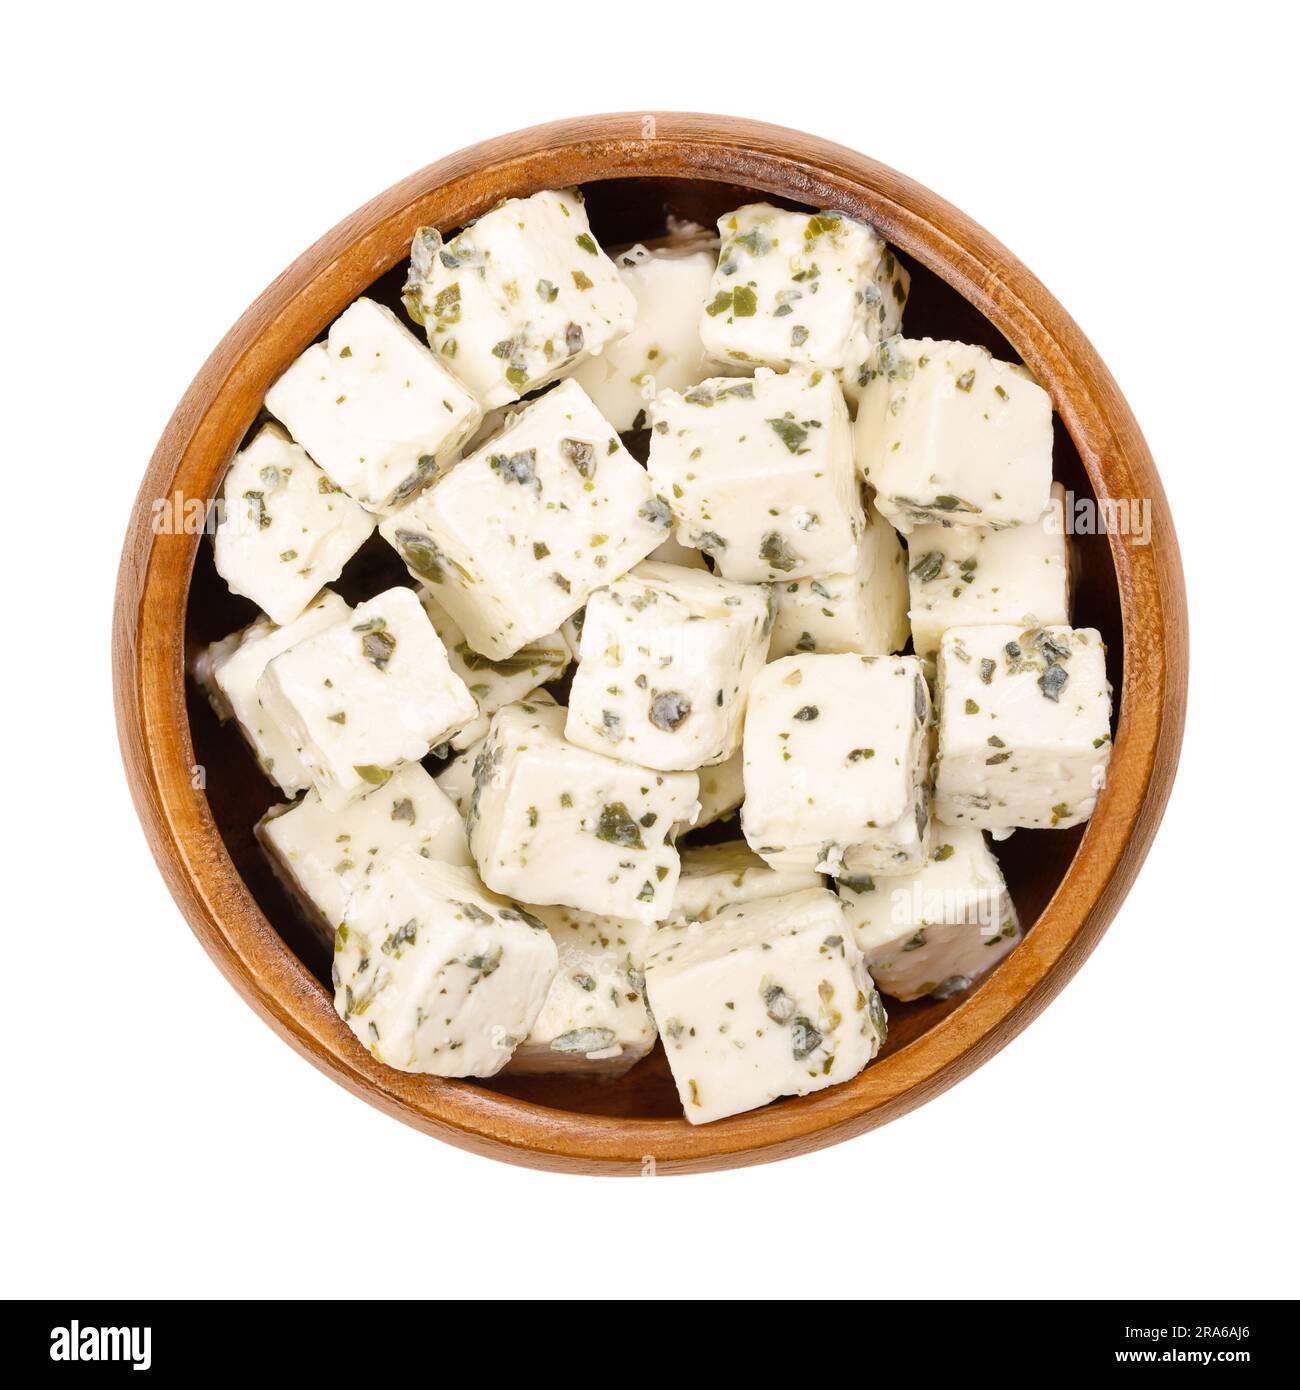 Griechische Feta-Würfel, Käse in Salzlake mit mediterranen Kräutern, in einer Holzschüssel. Käse, in Salzlake gereift, mit weicher und feuchter Textur, frisch- und salzhaltigem Geschmack. Stockfoto